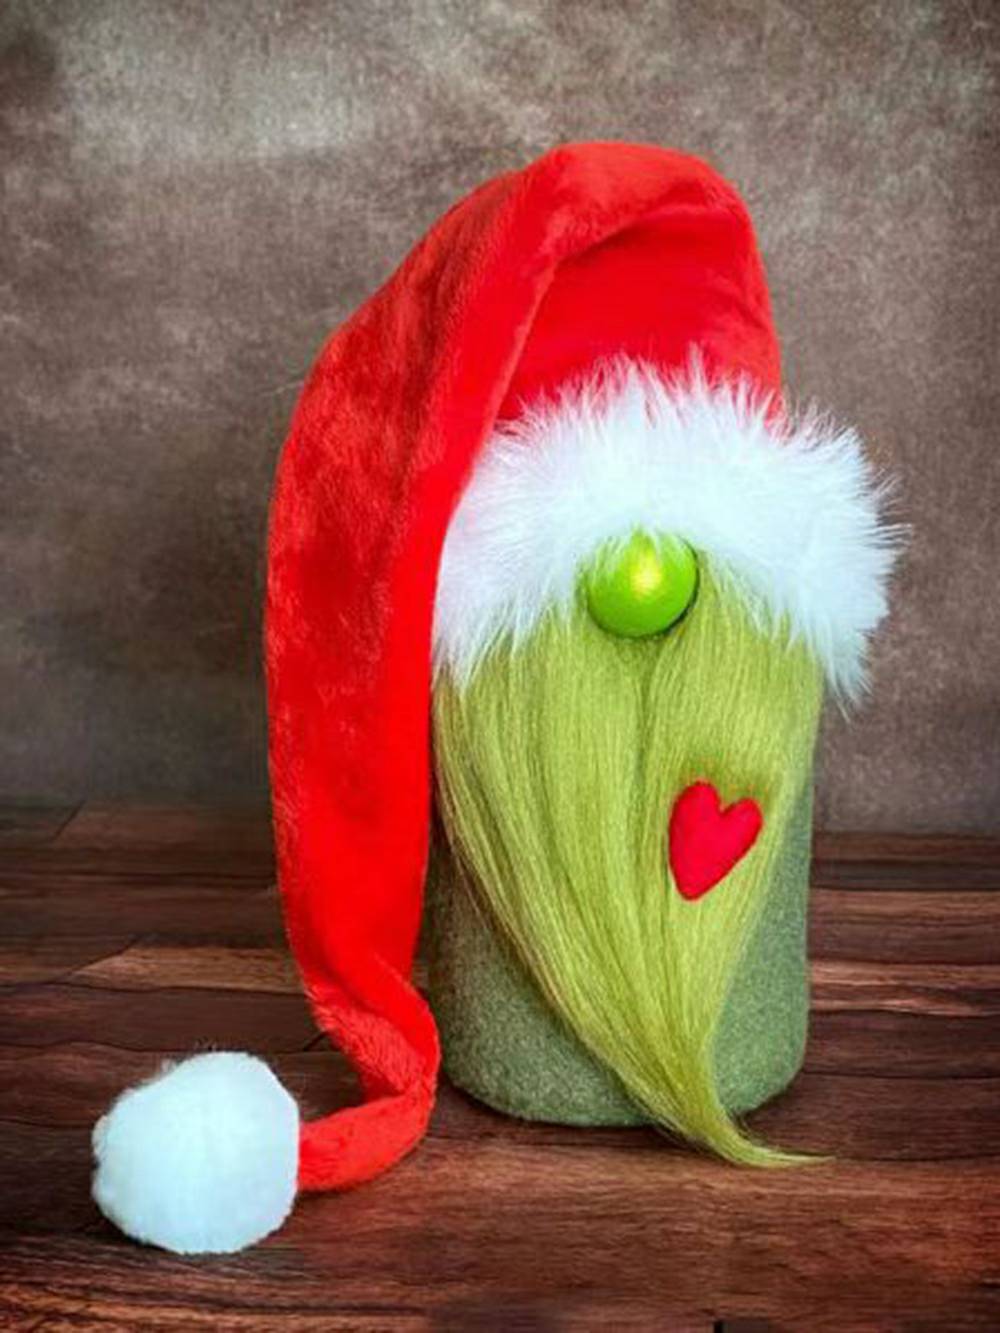 Εγκάρδια χριστουγεννιάτικη διακόσμηση με πράσινη γενειάδα Gnome βελούδινο ξωτικό